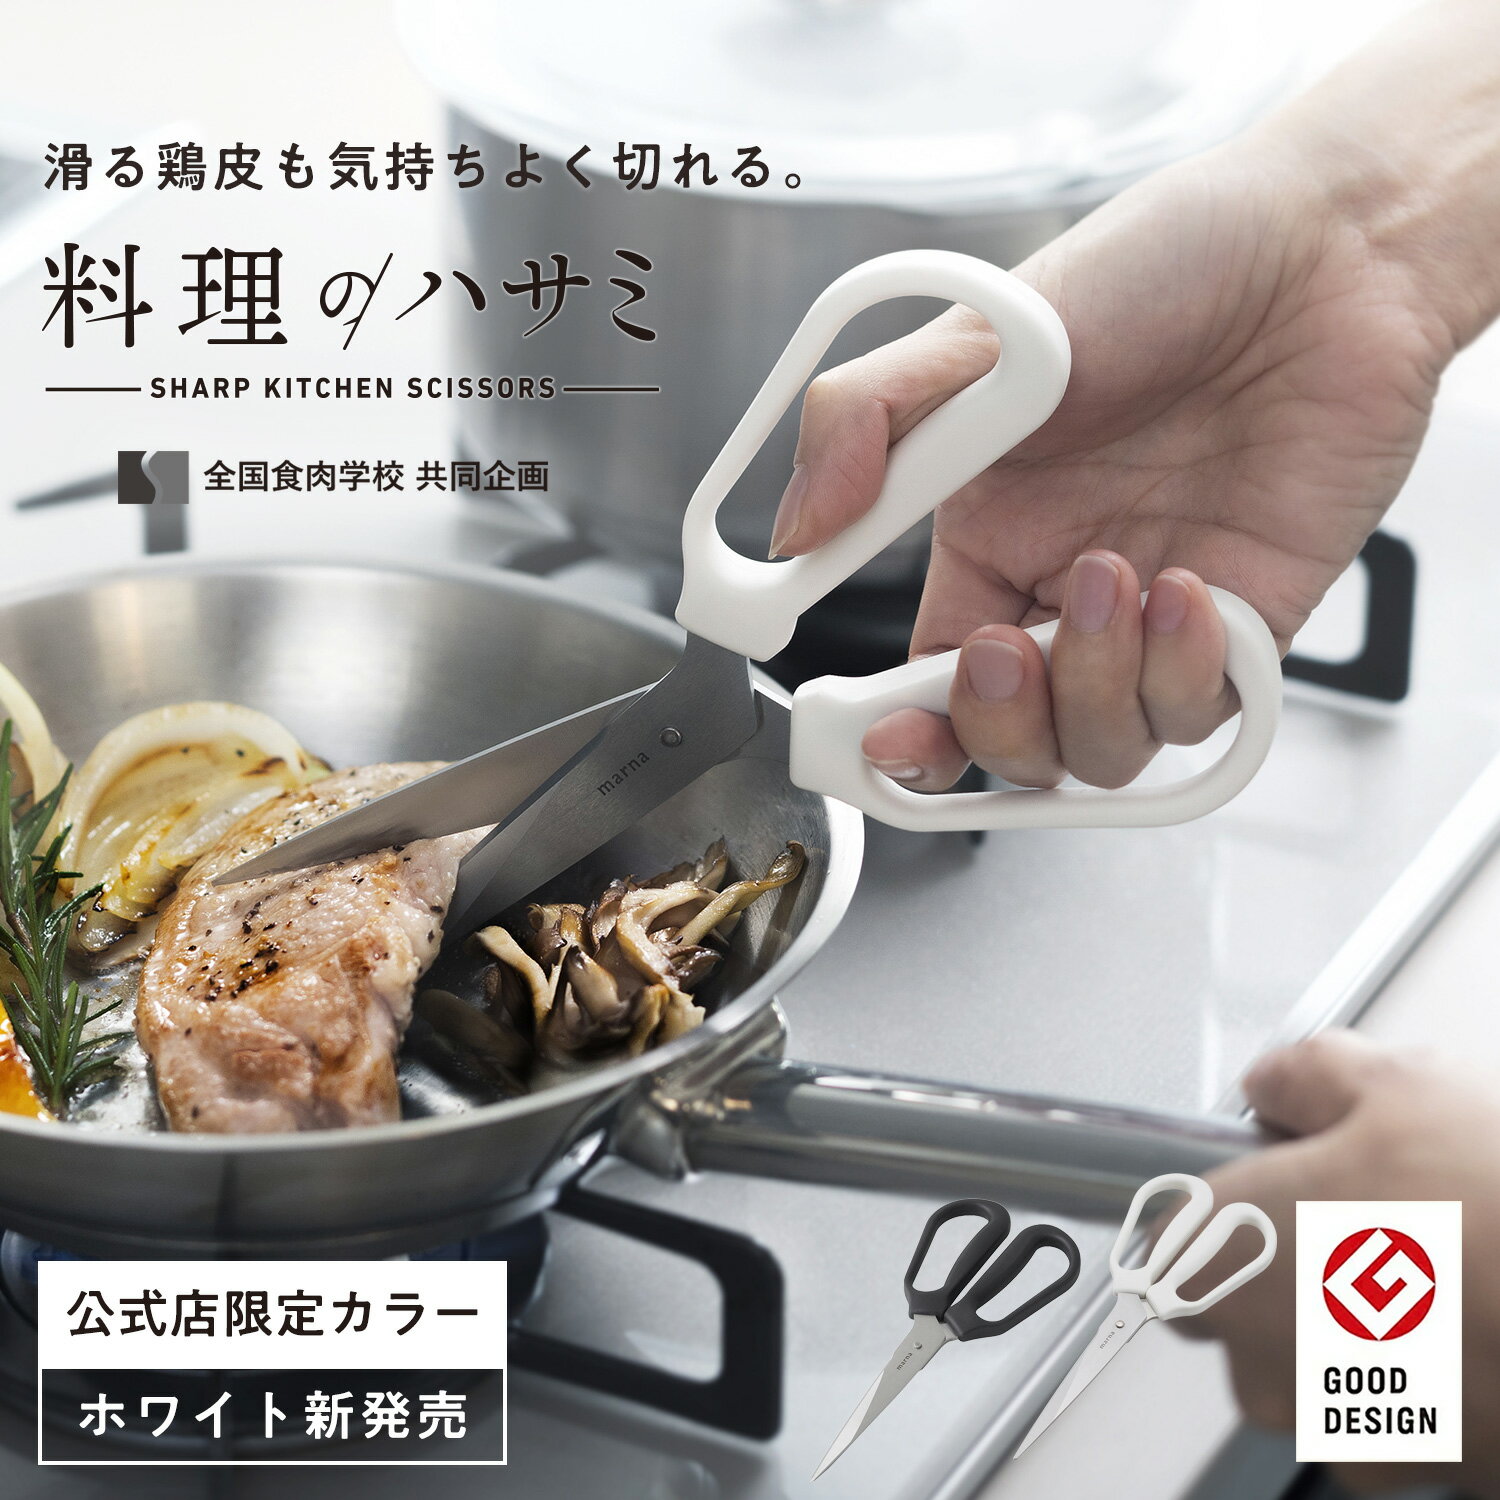 【マーナ公式】料理のハサミ K747|食洗機対応 メール便 分解して洗える 防サビ加工 錆びにくい 左利き 両利き キッチ…